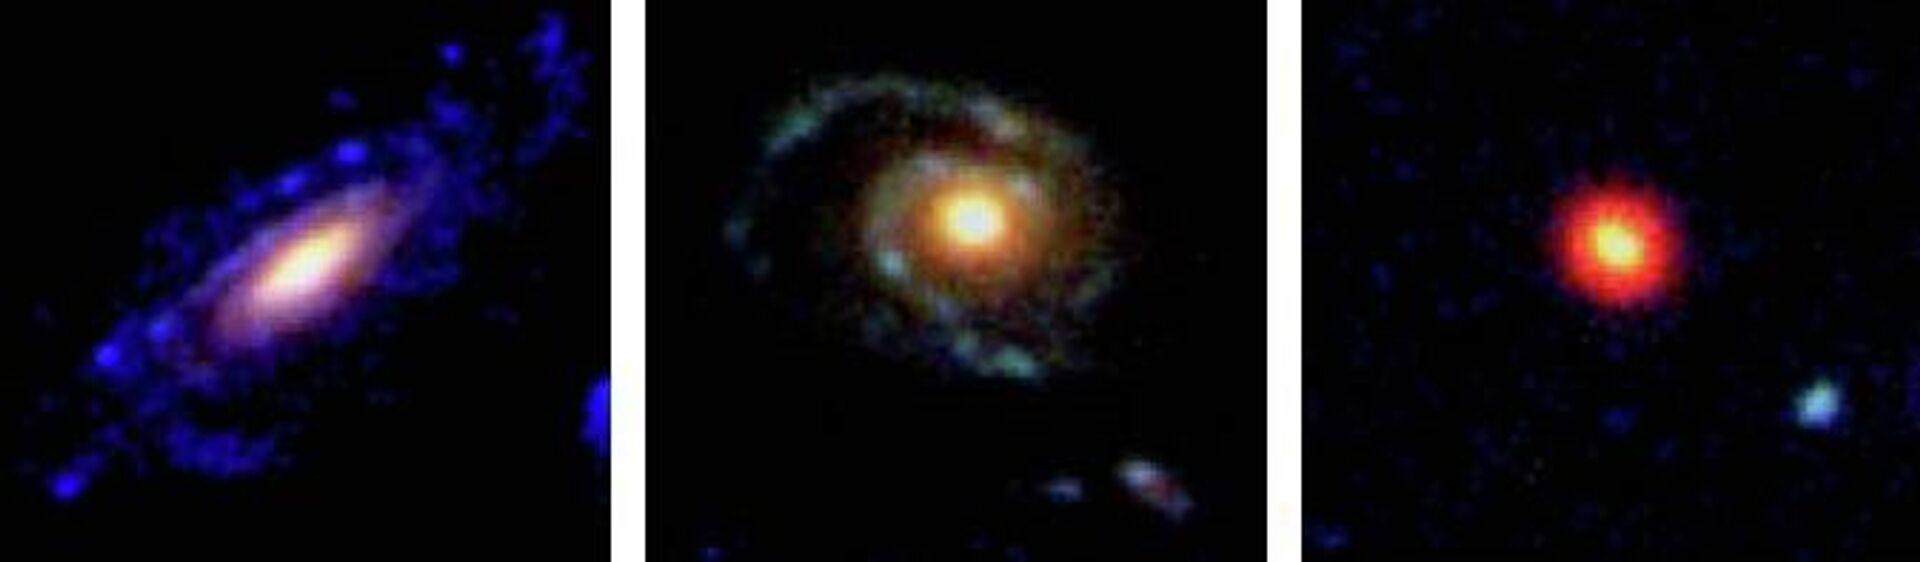 Dos galaxias de disco y una en espiral observadas en la lejanía - Sputnik Mundo, 1920, 11.06.2021